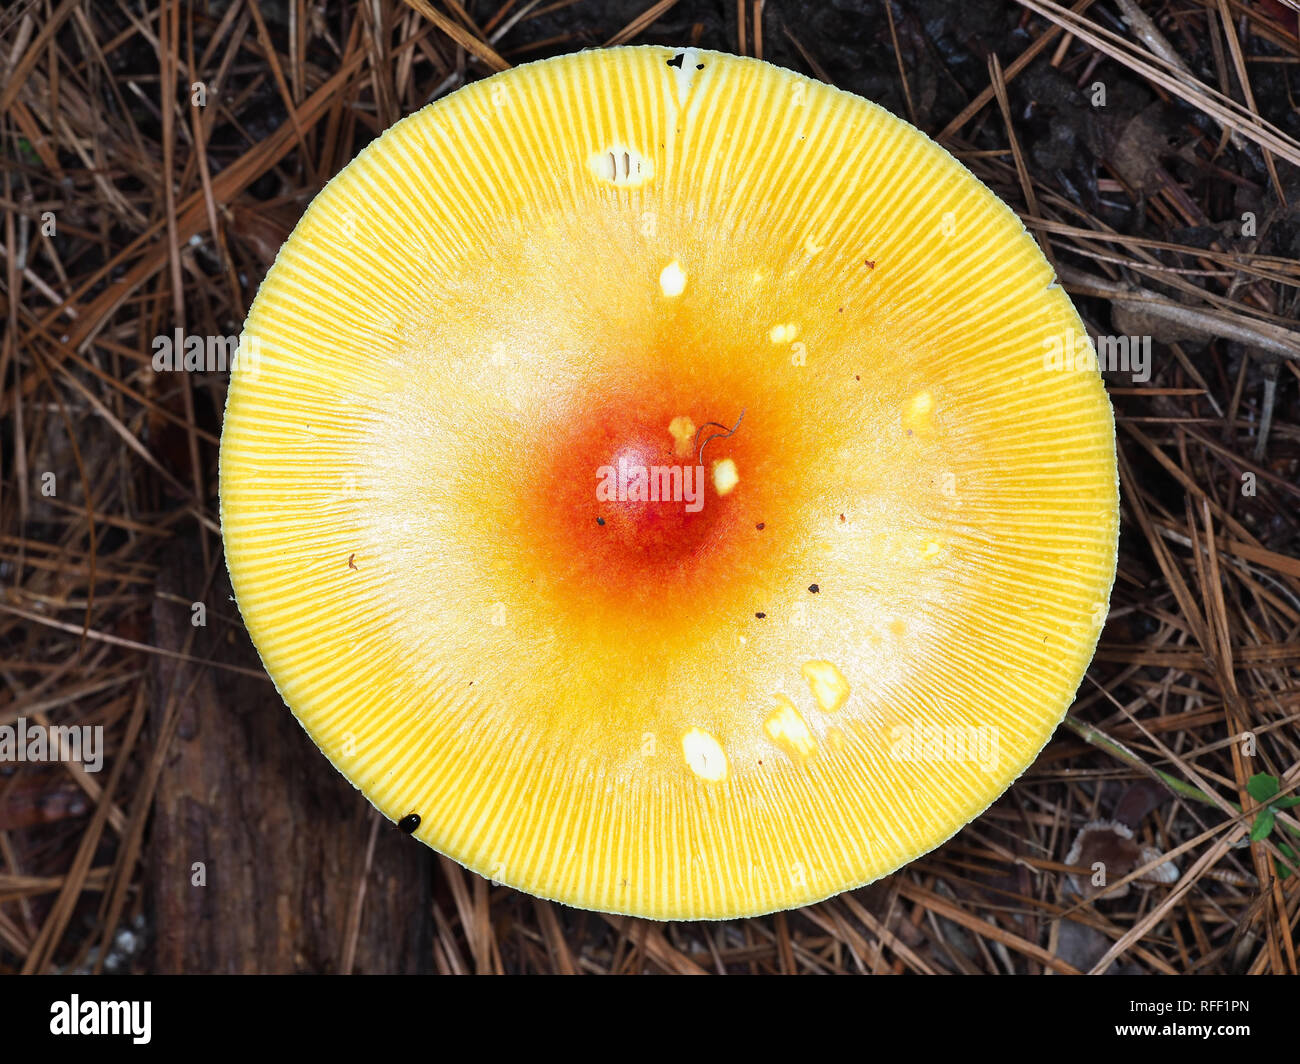 Orange couleur vive champignons Amanite au Texas, USA Banque D'Images